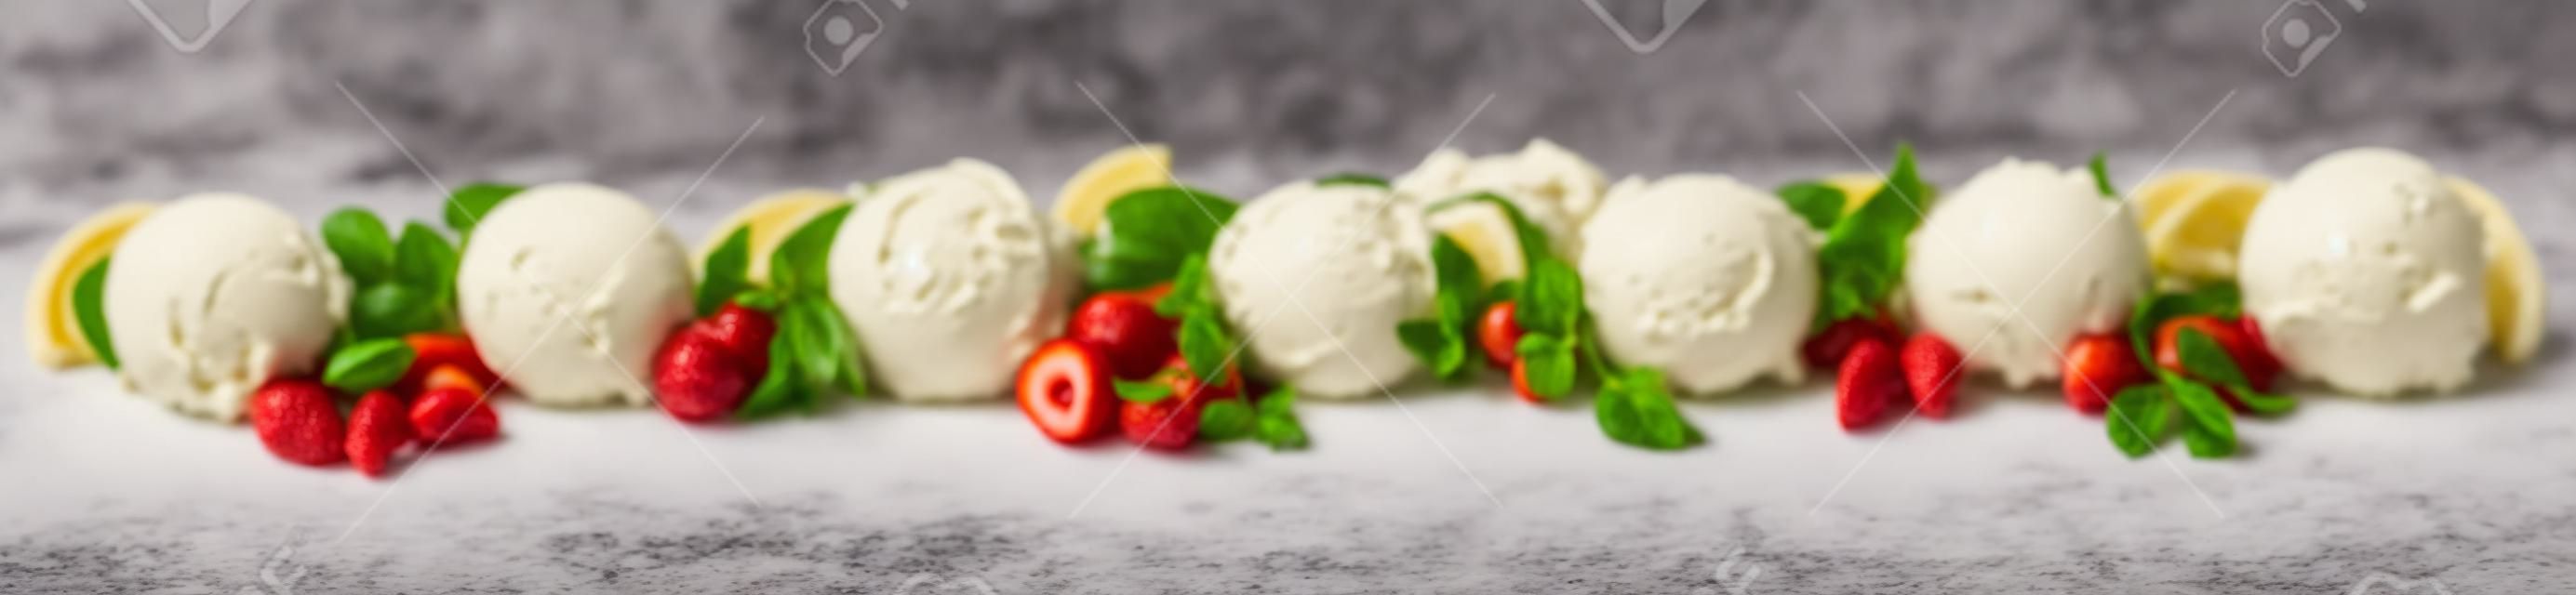 さまざまなフルーツフレーバー、バニラ、チョコレート、アーモンドを含むさまざまなイタリアンアイスクリームデザートが白地に新鮮な食材を使ったスクープのラインとして表示された広いパノラマバナー